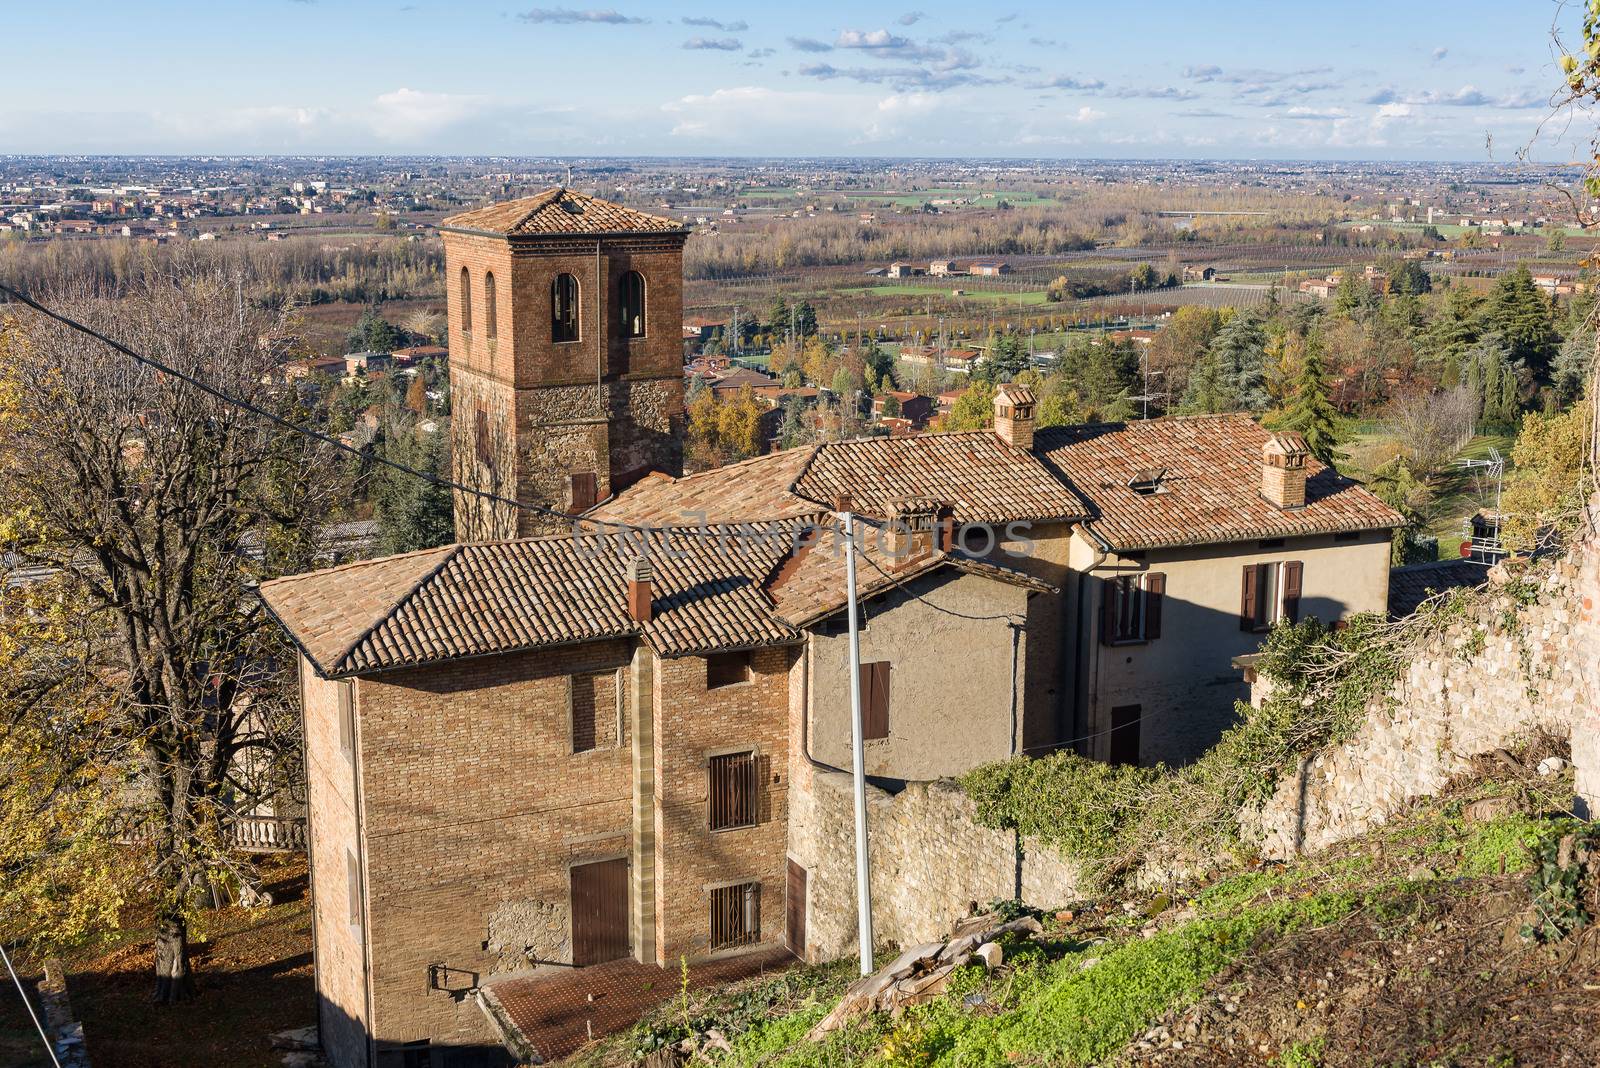 Ancient medieval village of Savignano sul Panaro, in Emilia Romagna